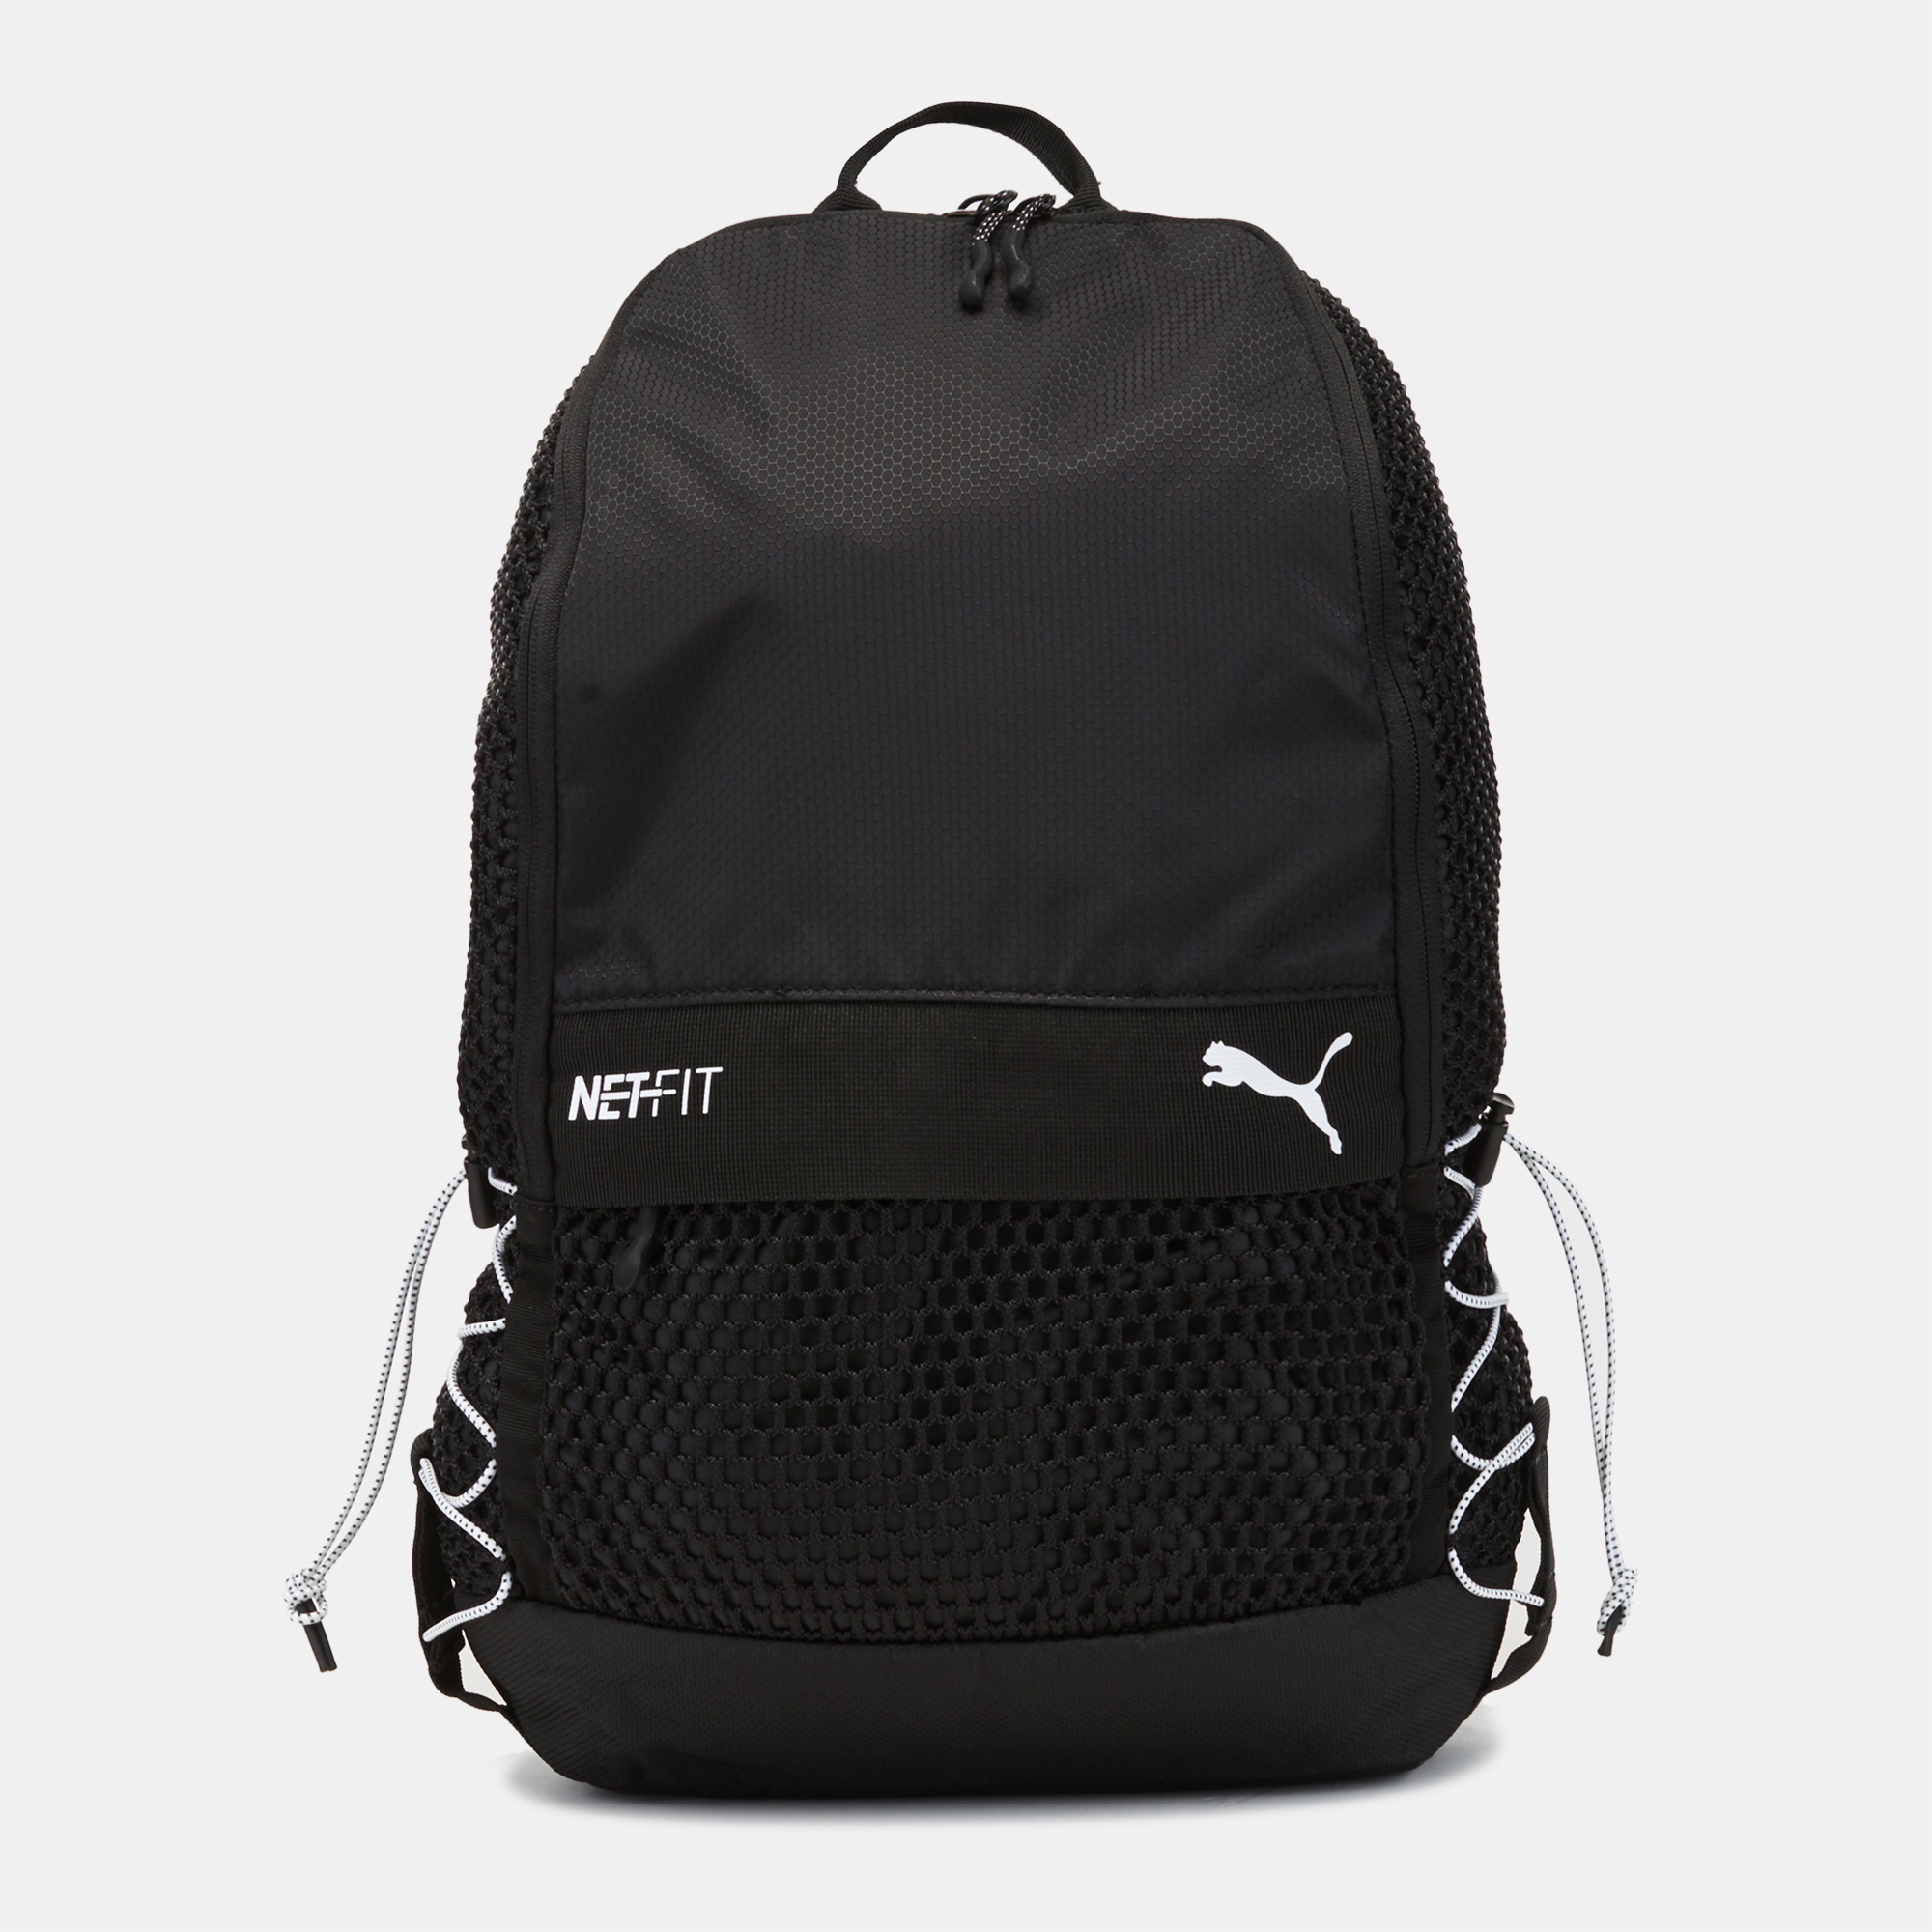 PUMA Netfit Backpack | Backpacks and 